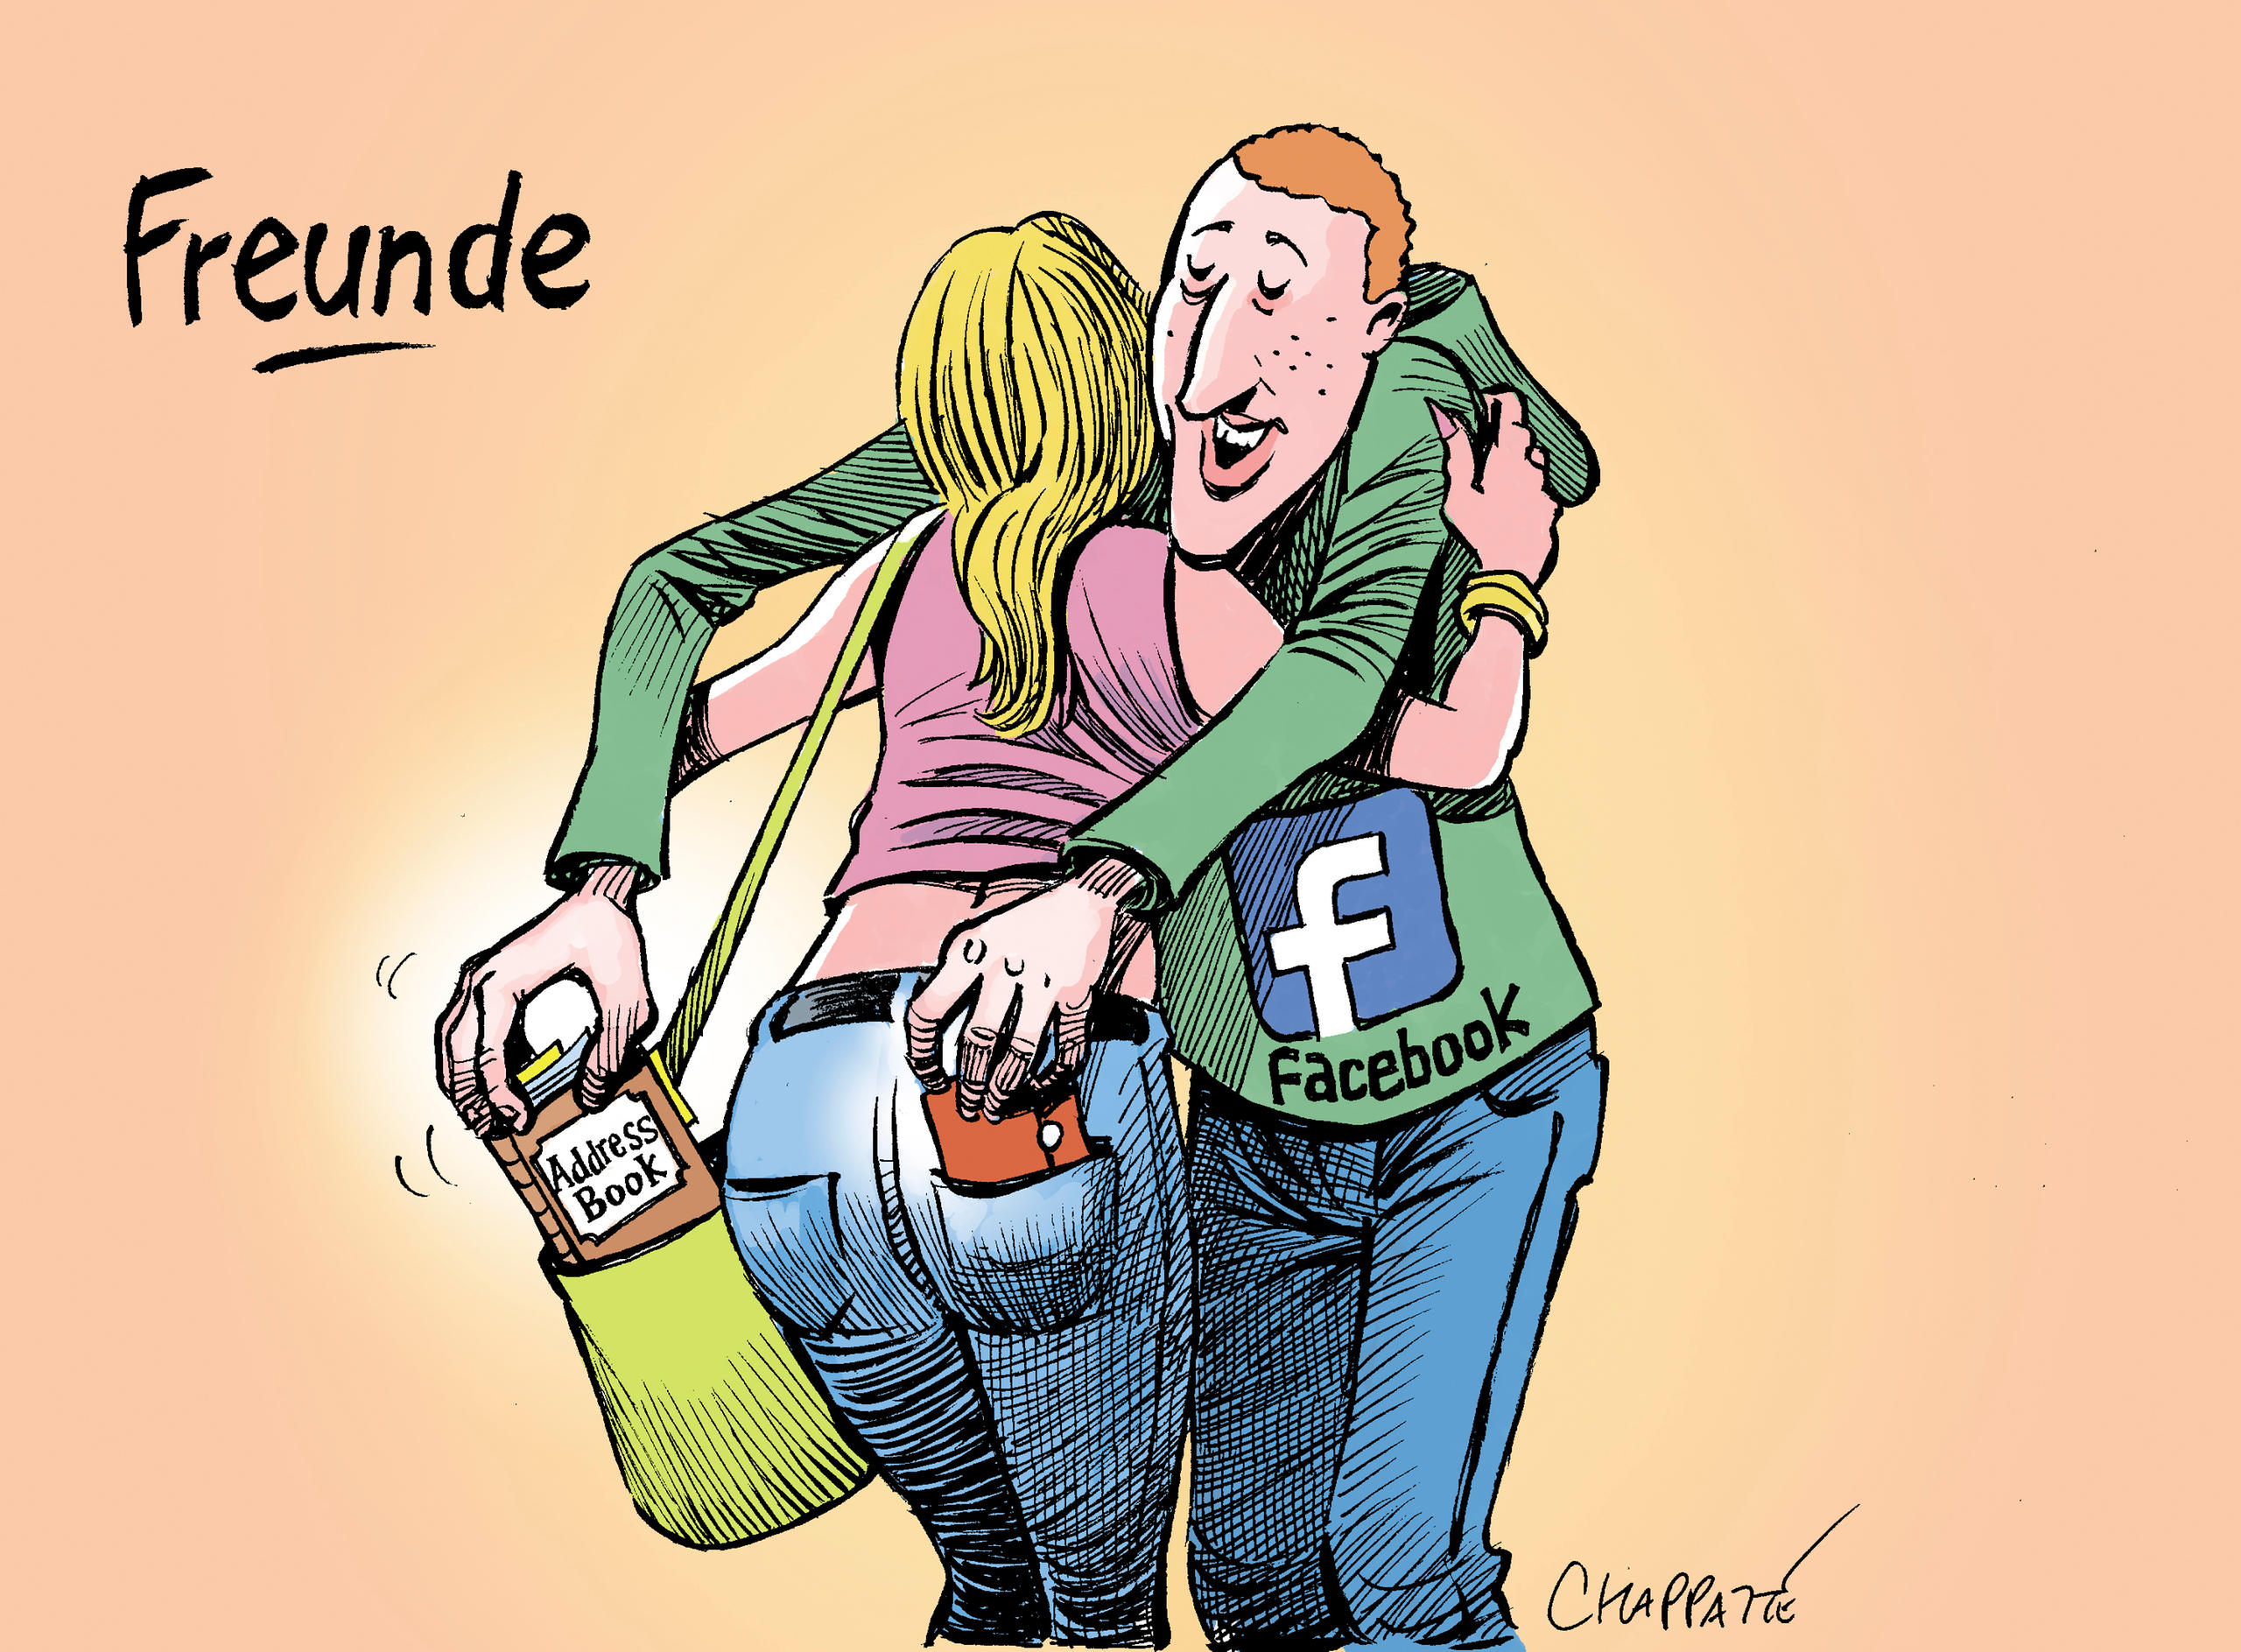 “给我你的数据，我将成为你的朋友！” 今年年初，社交媒体Facebook曝数据泄露丑闻。